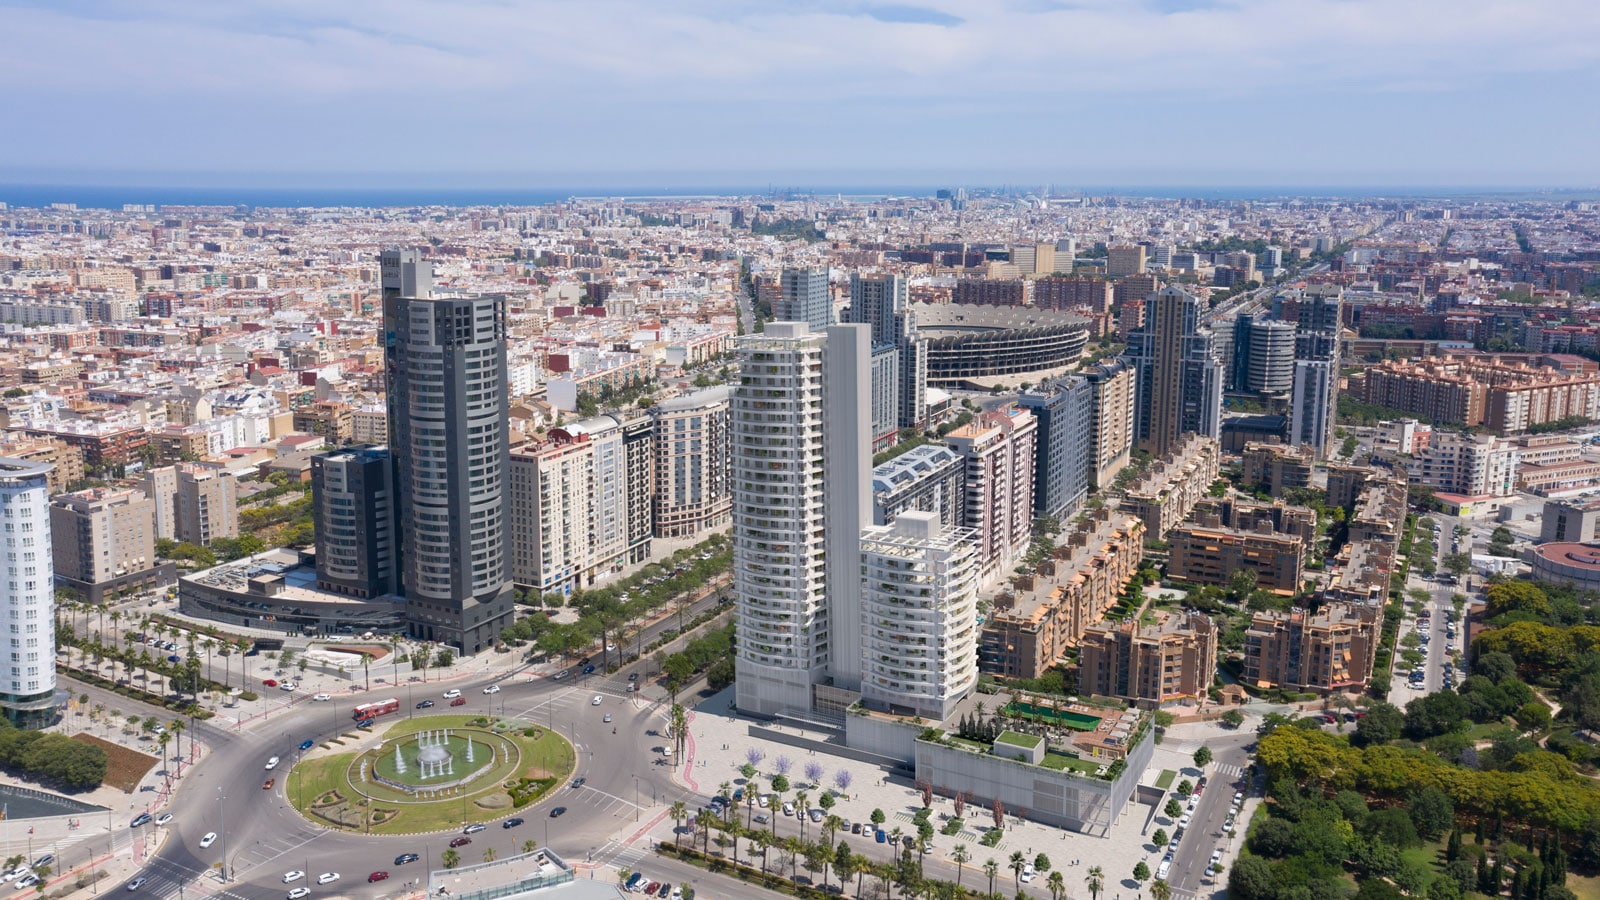 Bofill designs the tallest skyscraper in Valencia with Porcelanosa